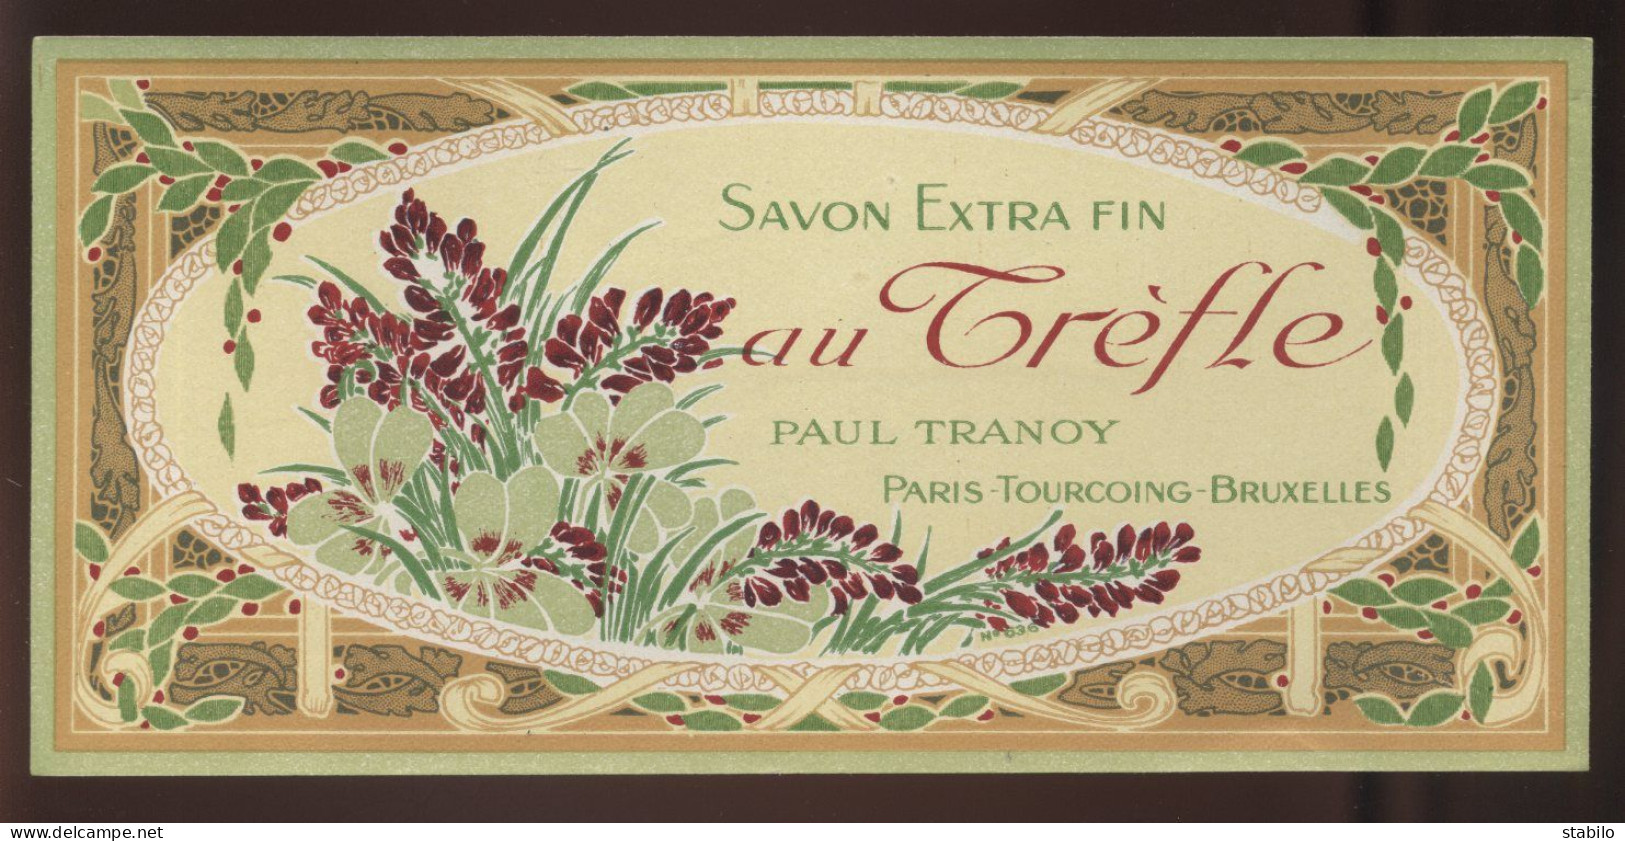 PARFUMS-BEAUTE - ETIQUETTE - SAVON EXTRA FIN AU TREFLE - MAISON PAUL TRANOY, PARIS-TOURCOING-BRUXELLES - Etichette